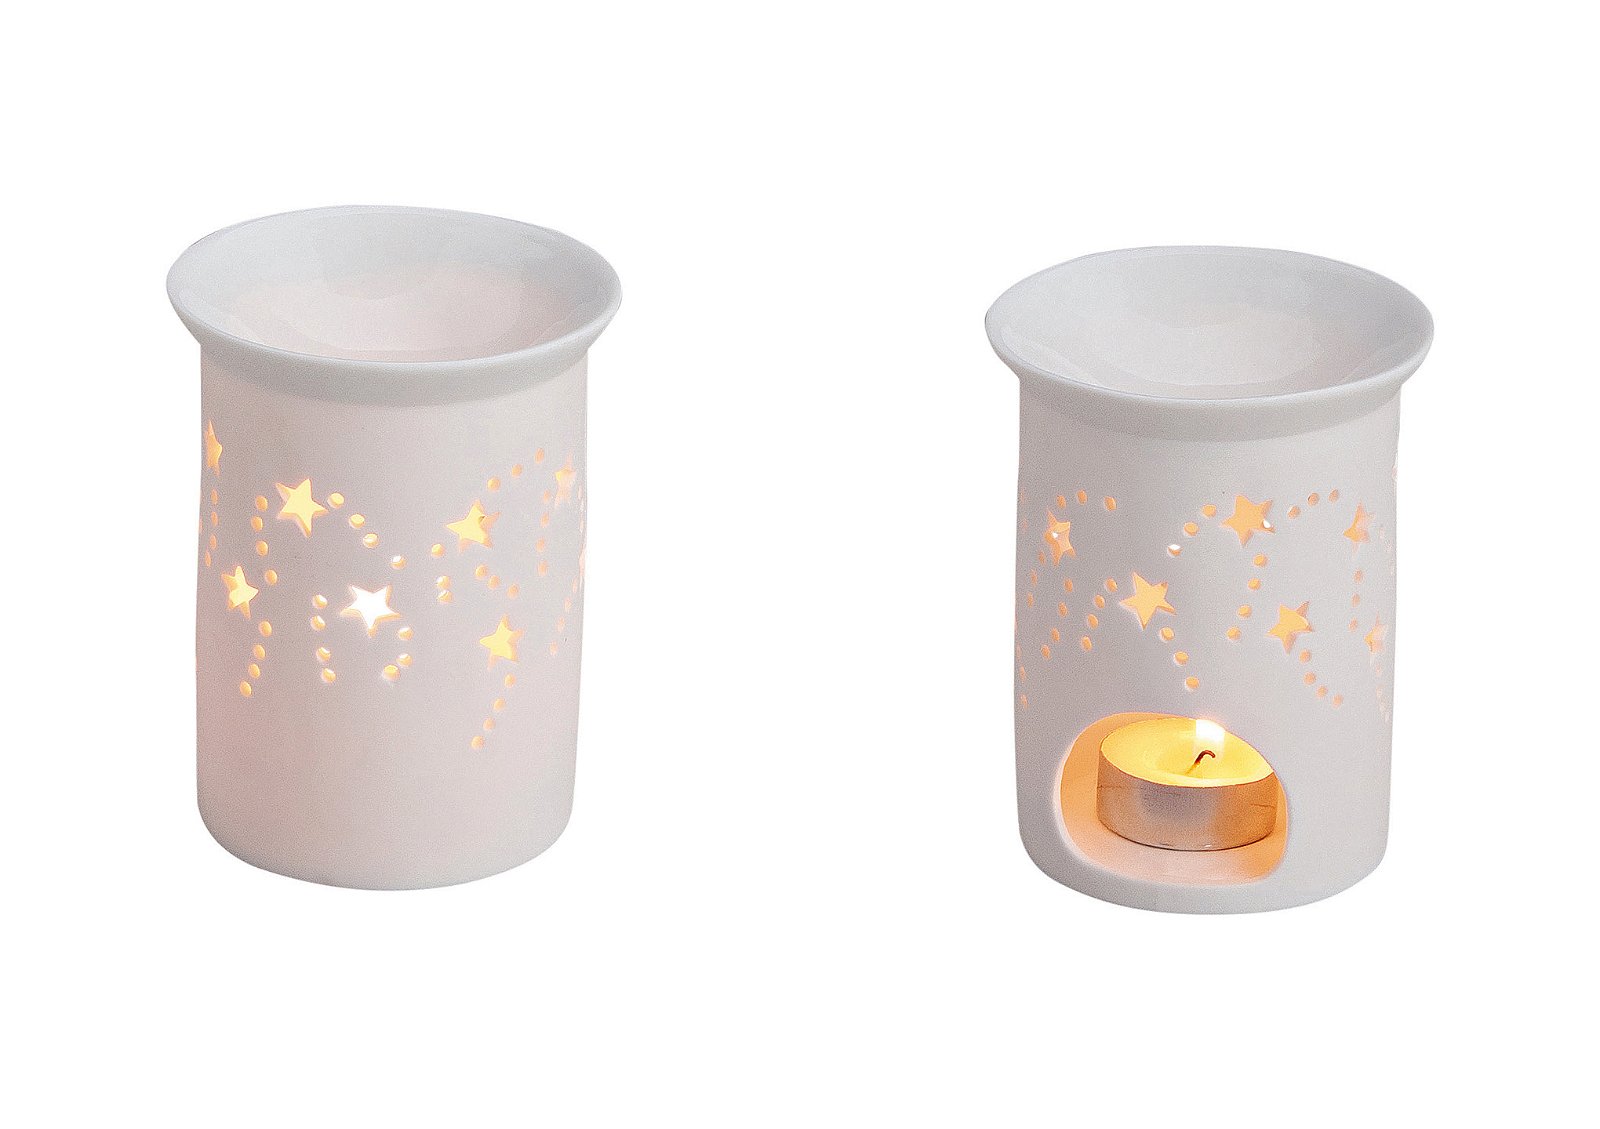 Fragrance burner stars open white porcelain, 9x11cm